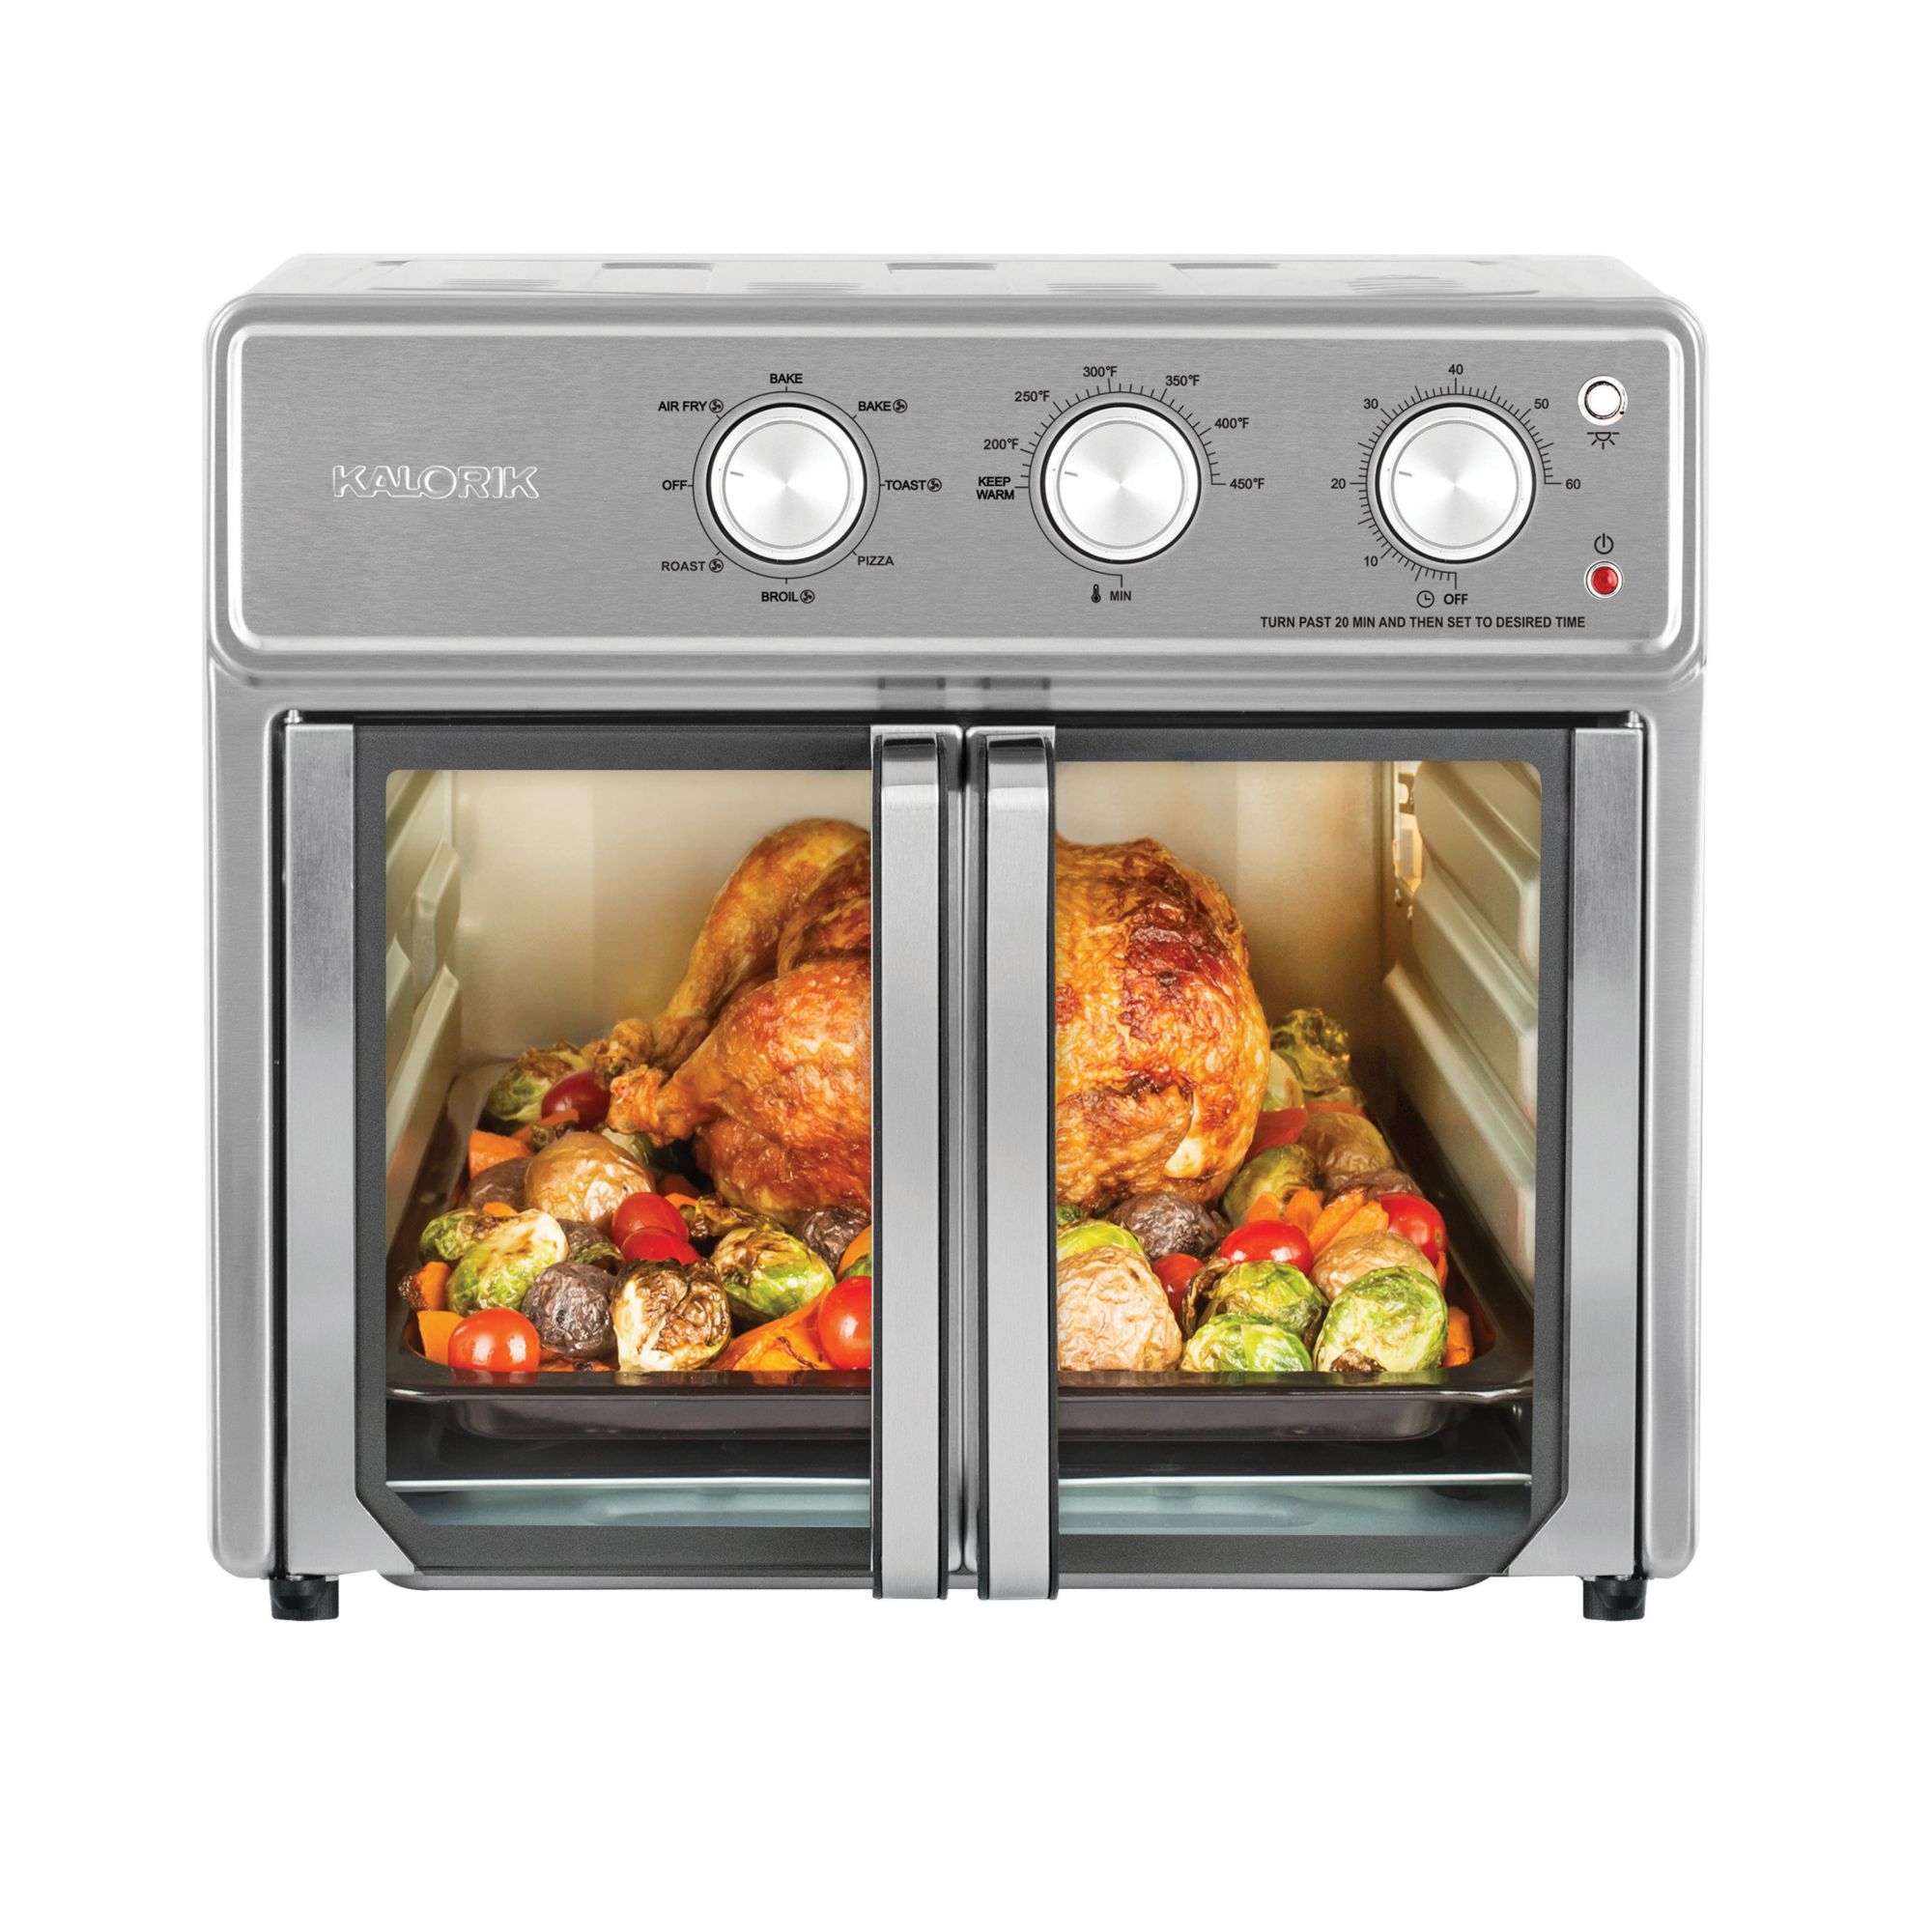 Kalorik MAXX Digital Air Fryer Oven AFO 46045 SS 26 Quart 10-in-1